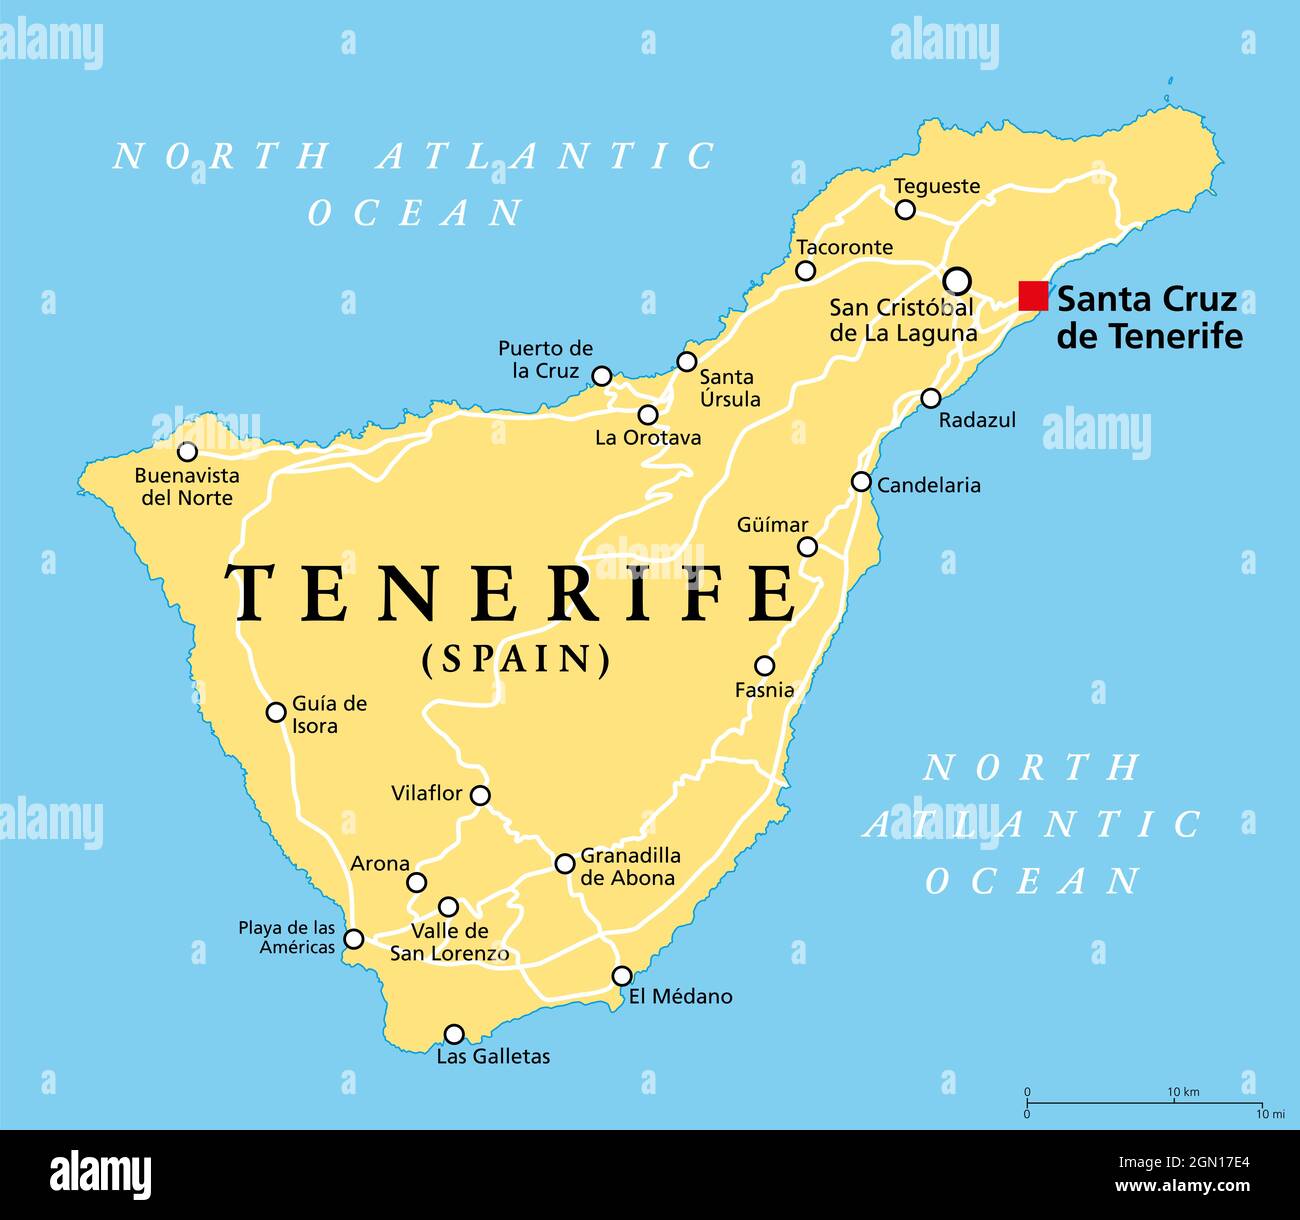 Île de Ténérife, carte politique, avec la capitale Santa Cruz de Ténérife. Île la plus grande et la plus peuplée des îles Canaries, Espagne. Banque D'Images